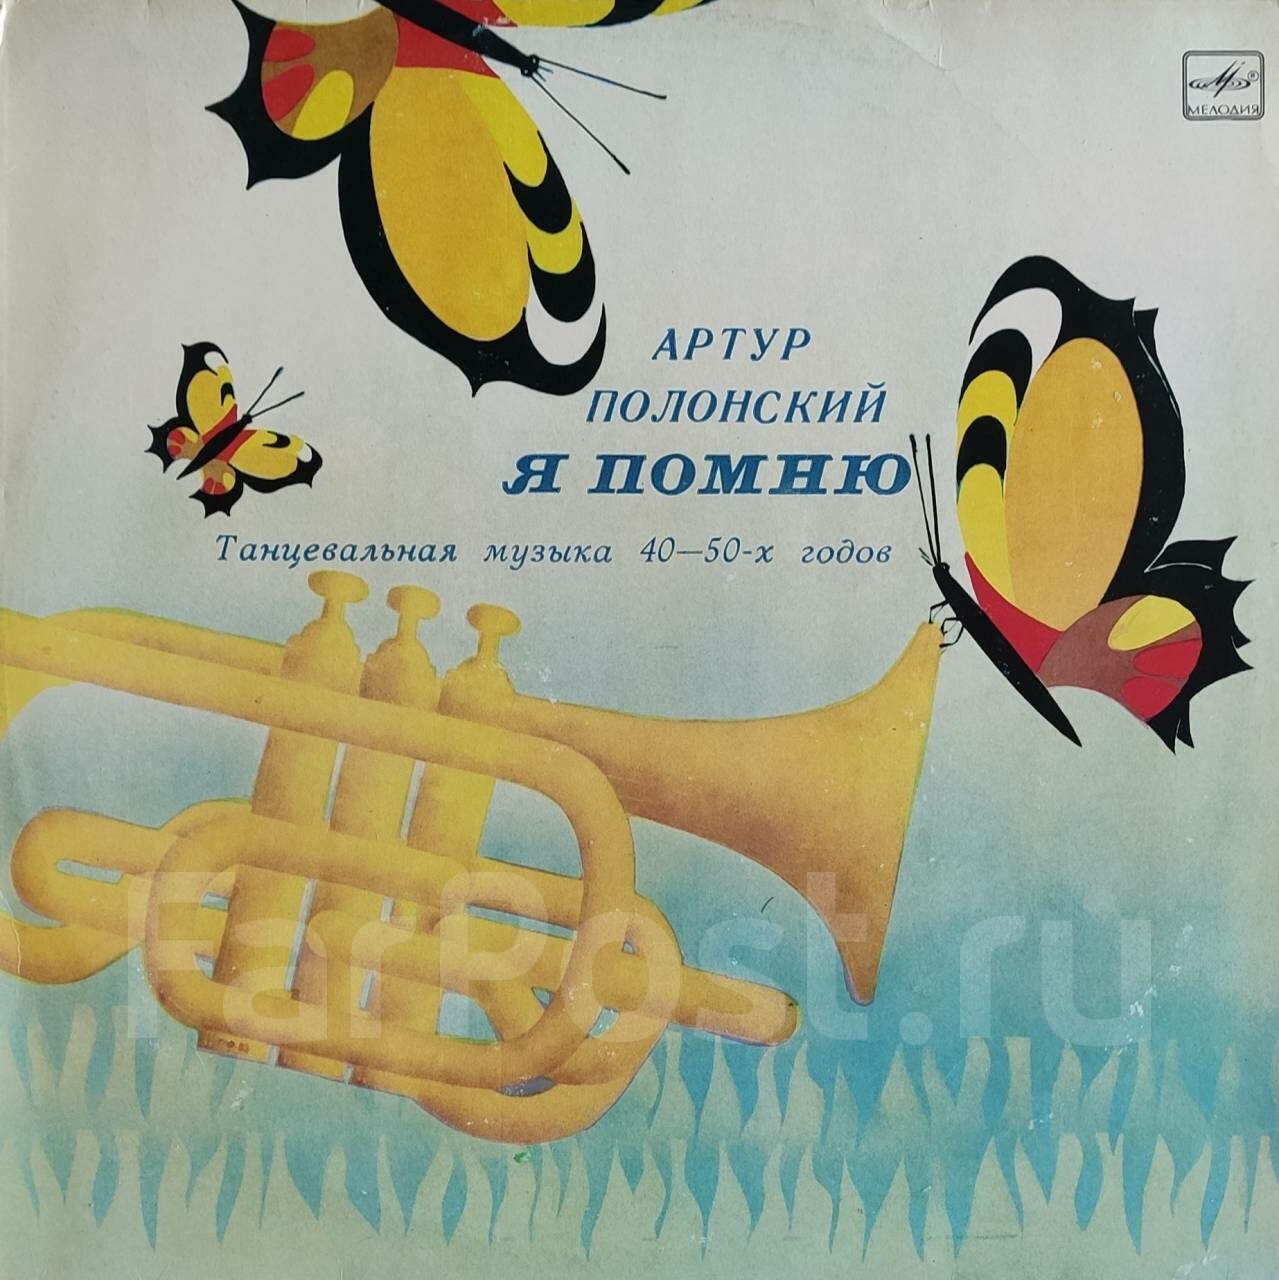 Артур ПОЛОНСКИЙ. «Я помню», танцевальная музыка 40—50-х гг.